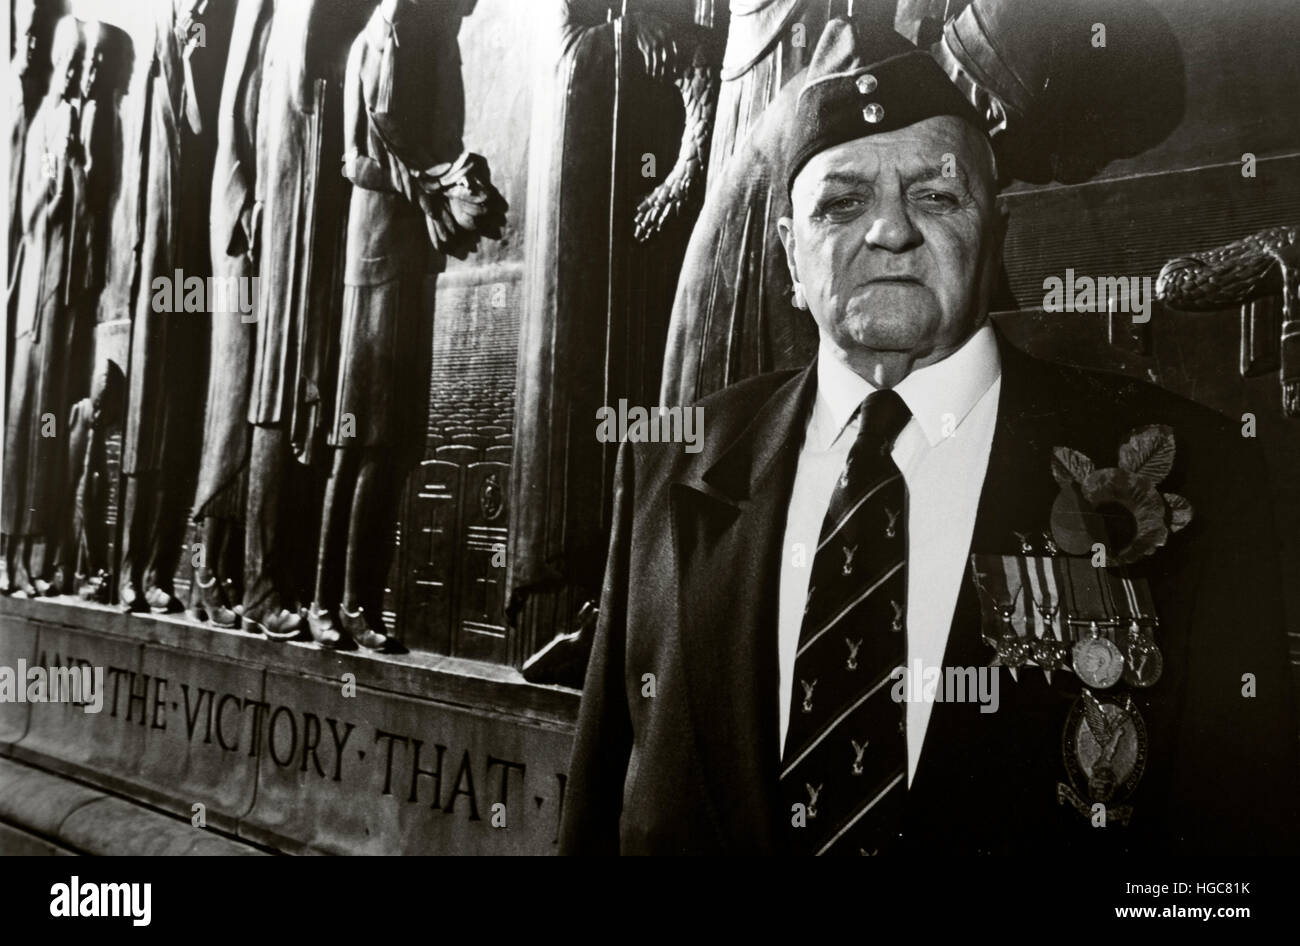 Vecchio soldato della seconda guerra mondiale al 2nd World War Memorial, Liverpool, Remembrance Day 11/11, St George's PL, Liverpool, Merseyside, Inghilterra, Regno Unito, L1 1JJ Foto Stock